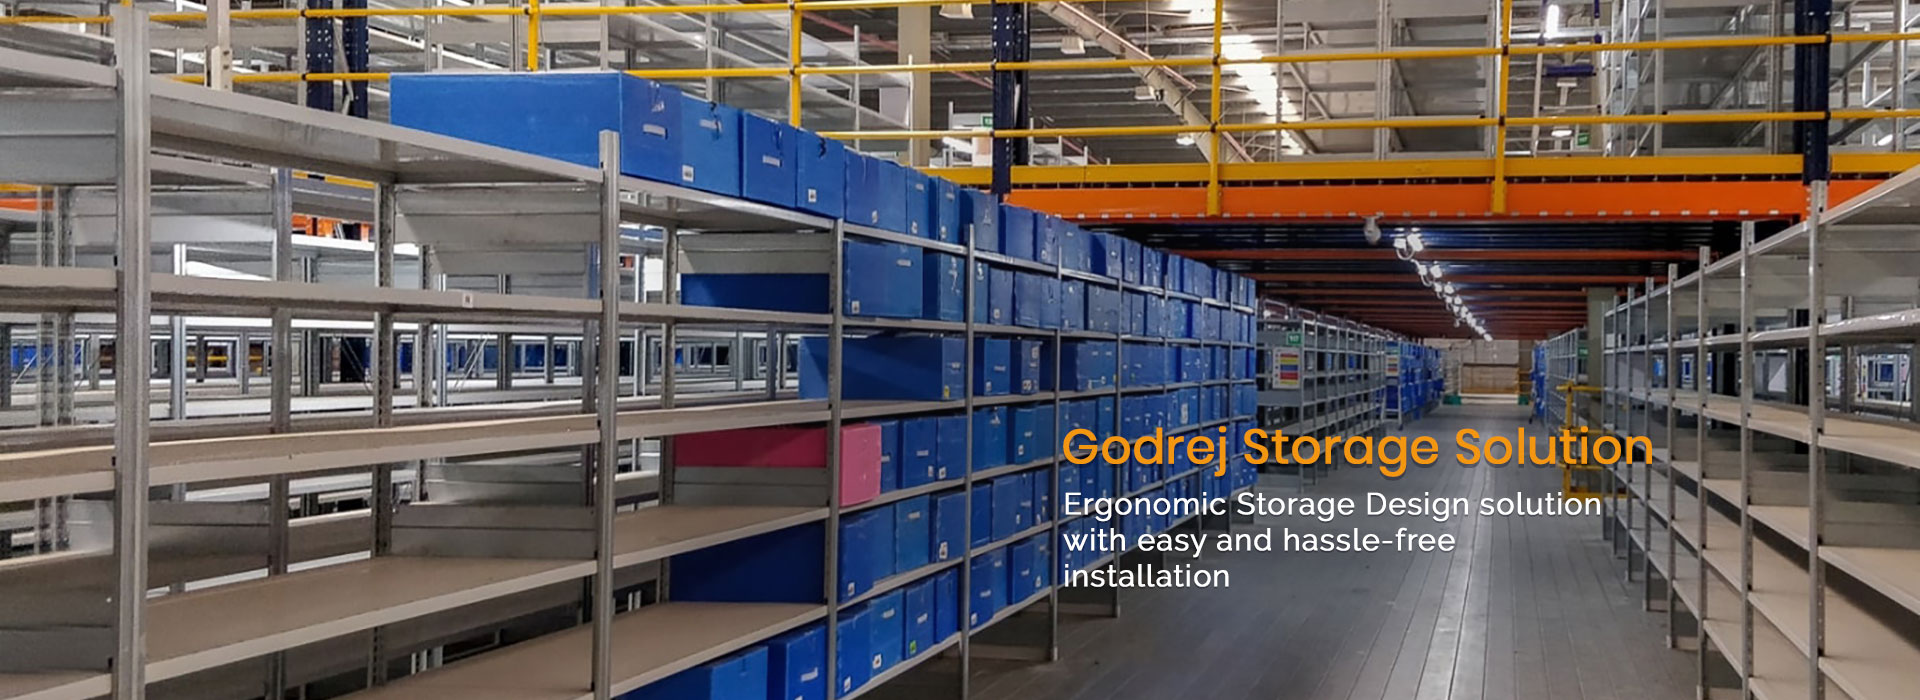 Godrej Storage Solutions in Mundka